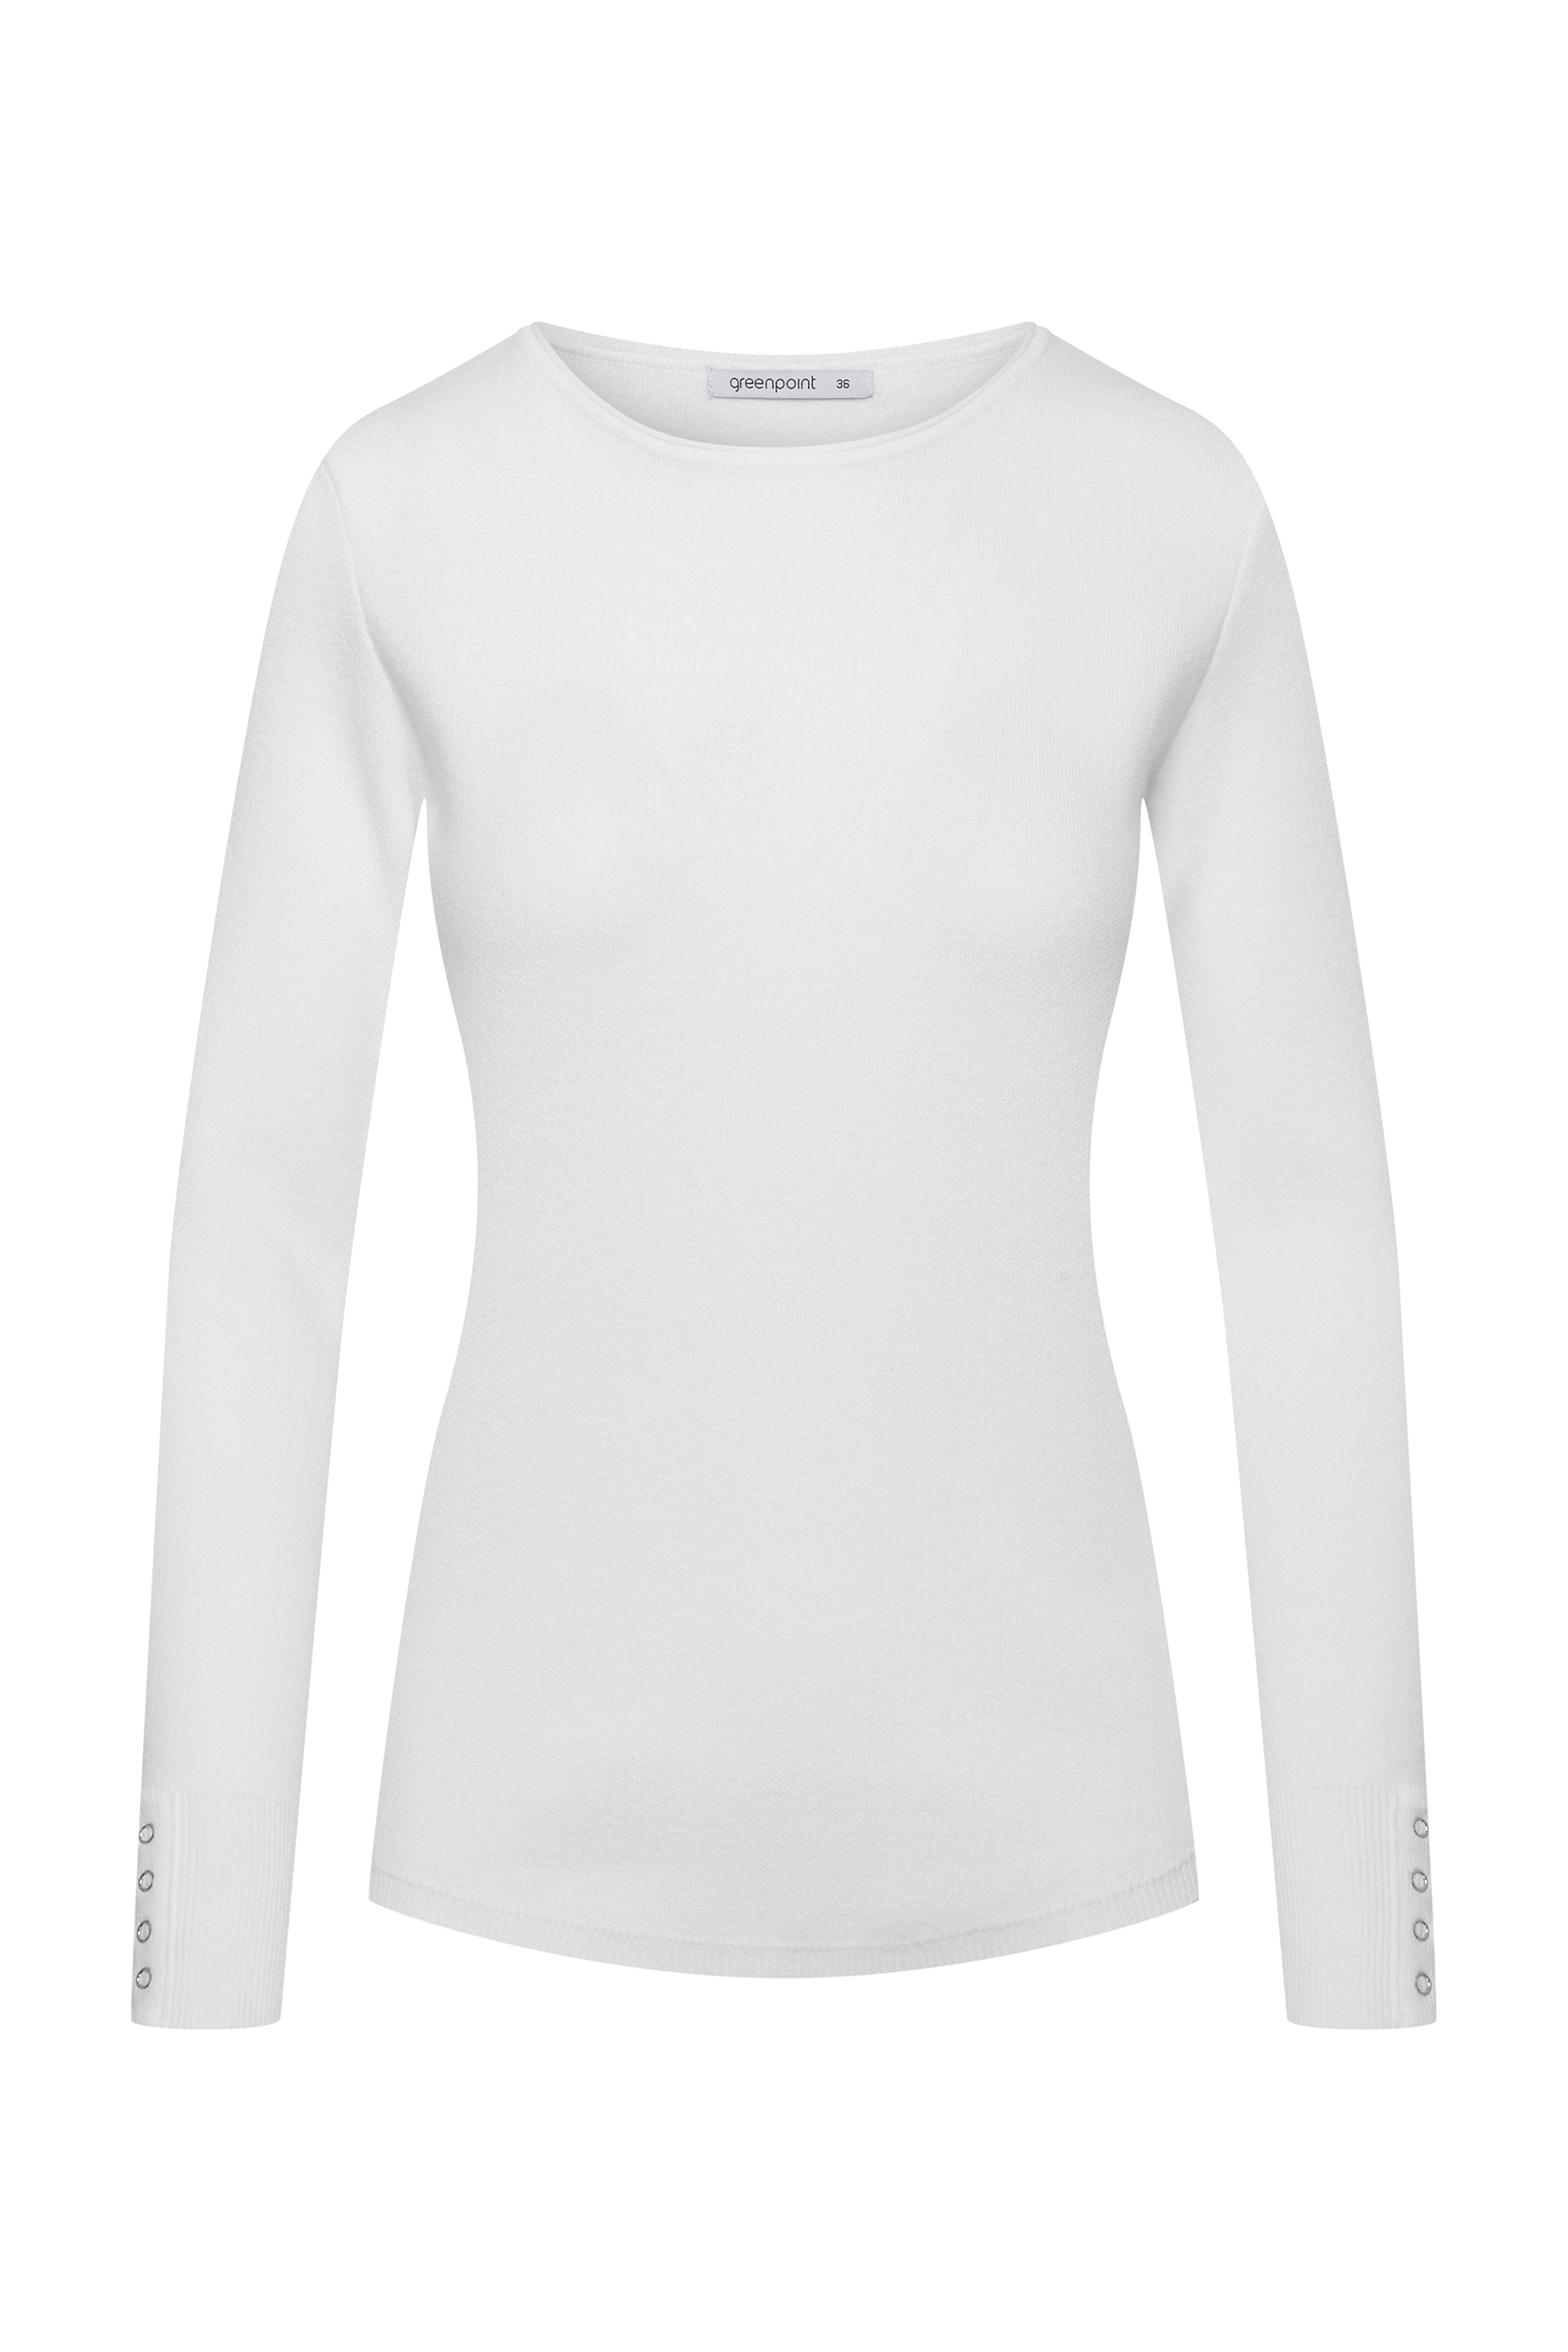 Biały sweter z ozdobnymi zatrzaskami przy rękawach